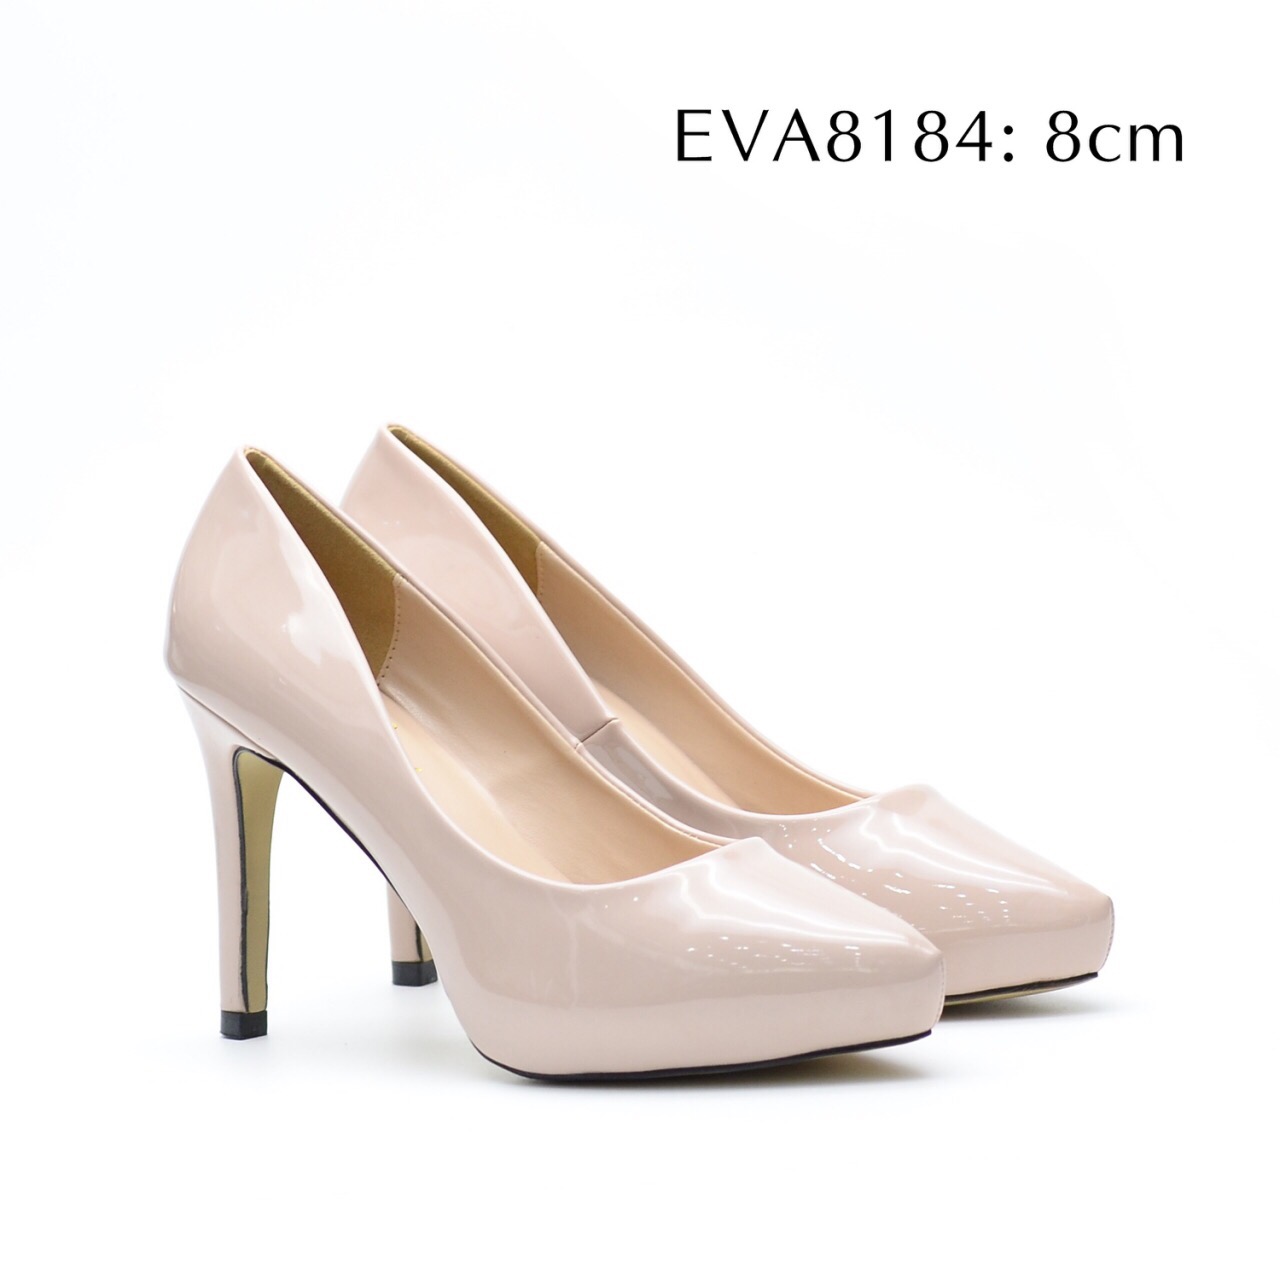 Giày cao gót mũi tròn EVA8184 da bóng tạo nét đẹp trẻ trung, dịu dàng, nữ tính